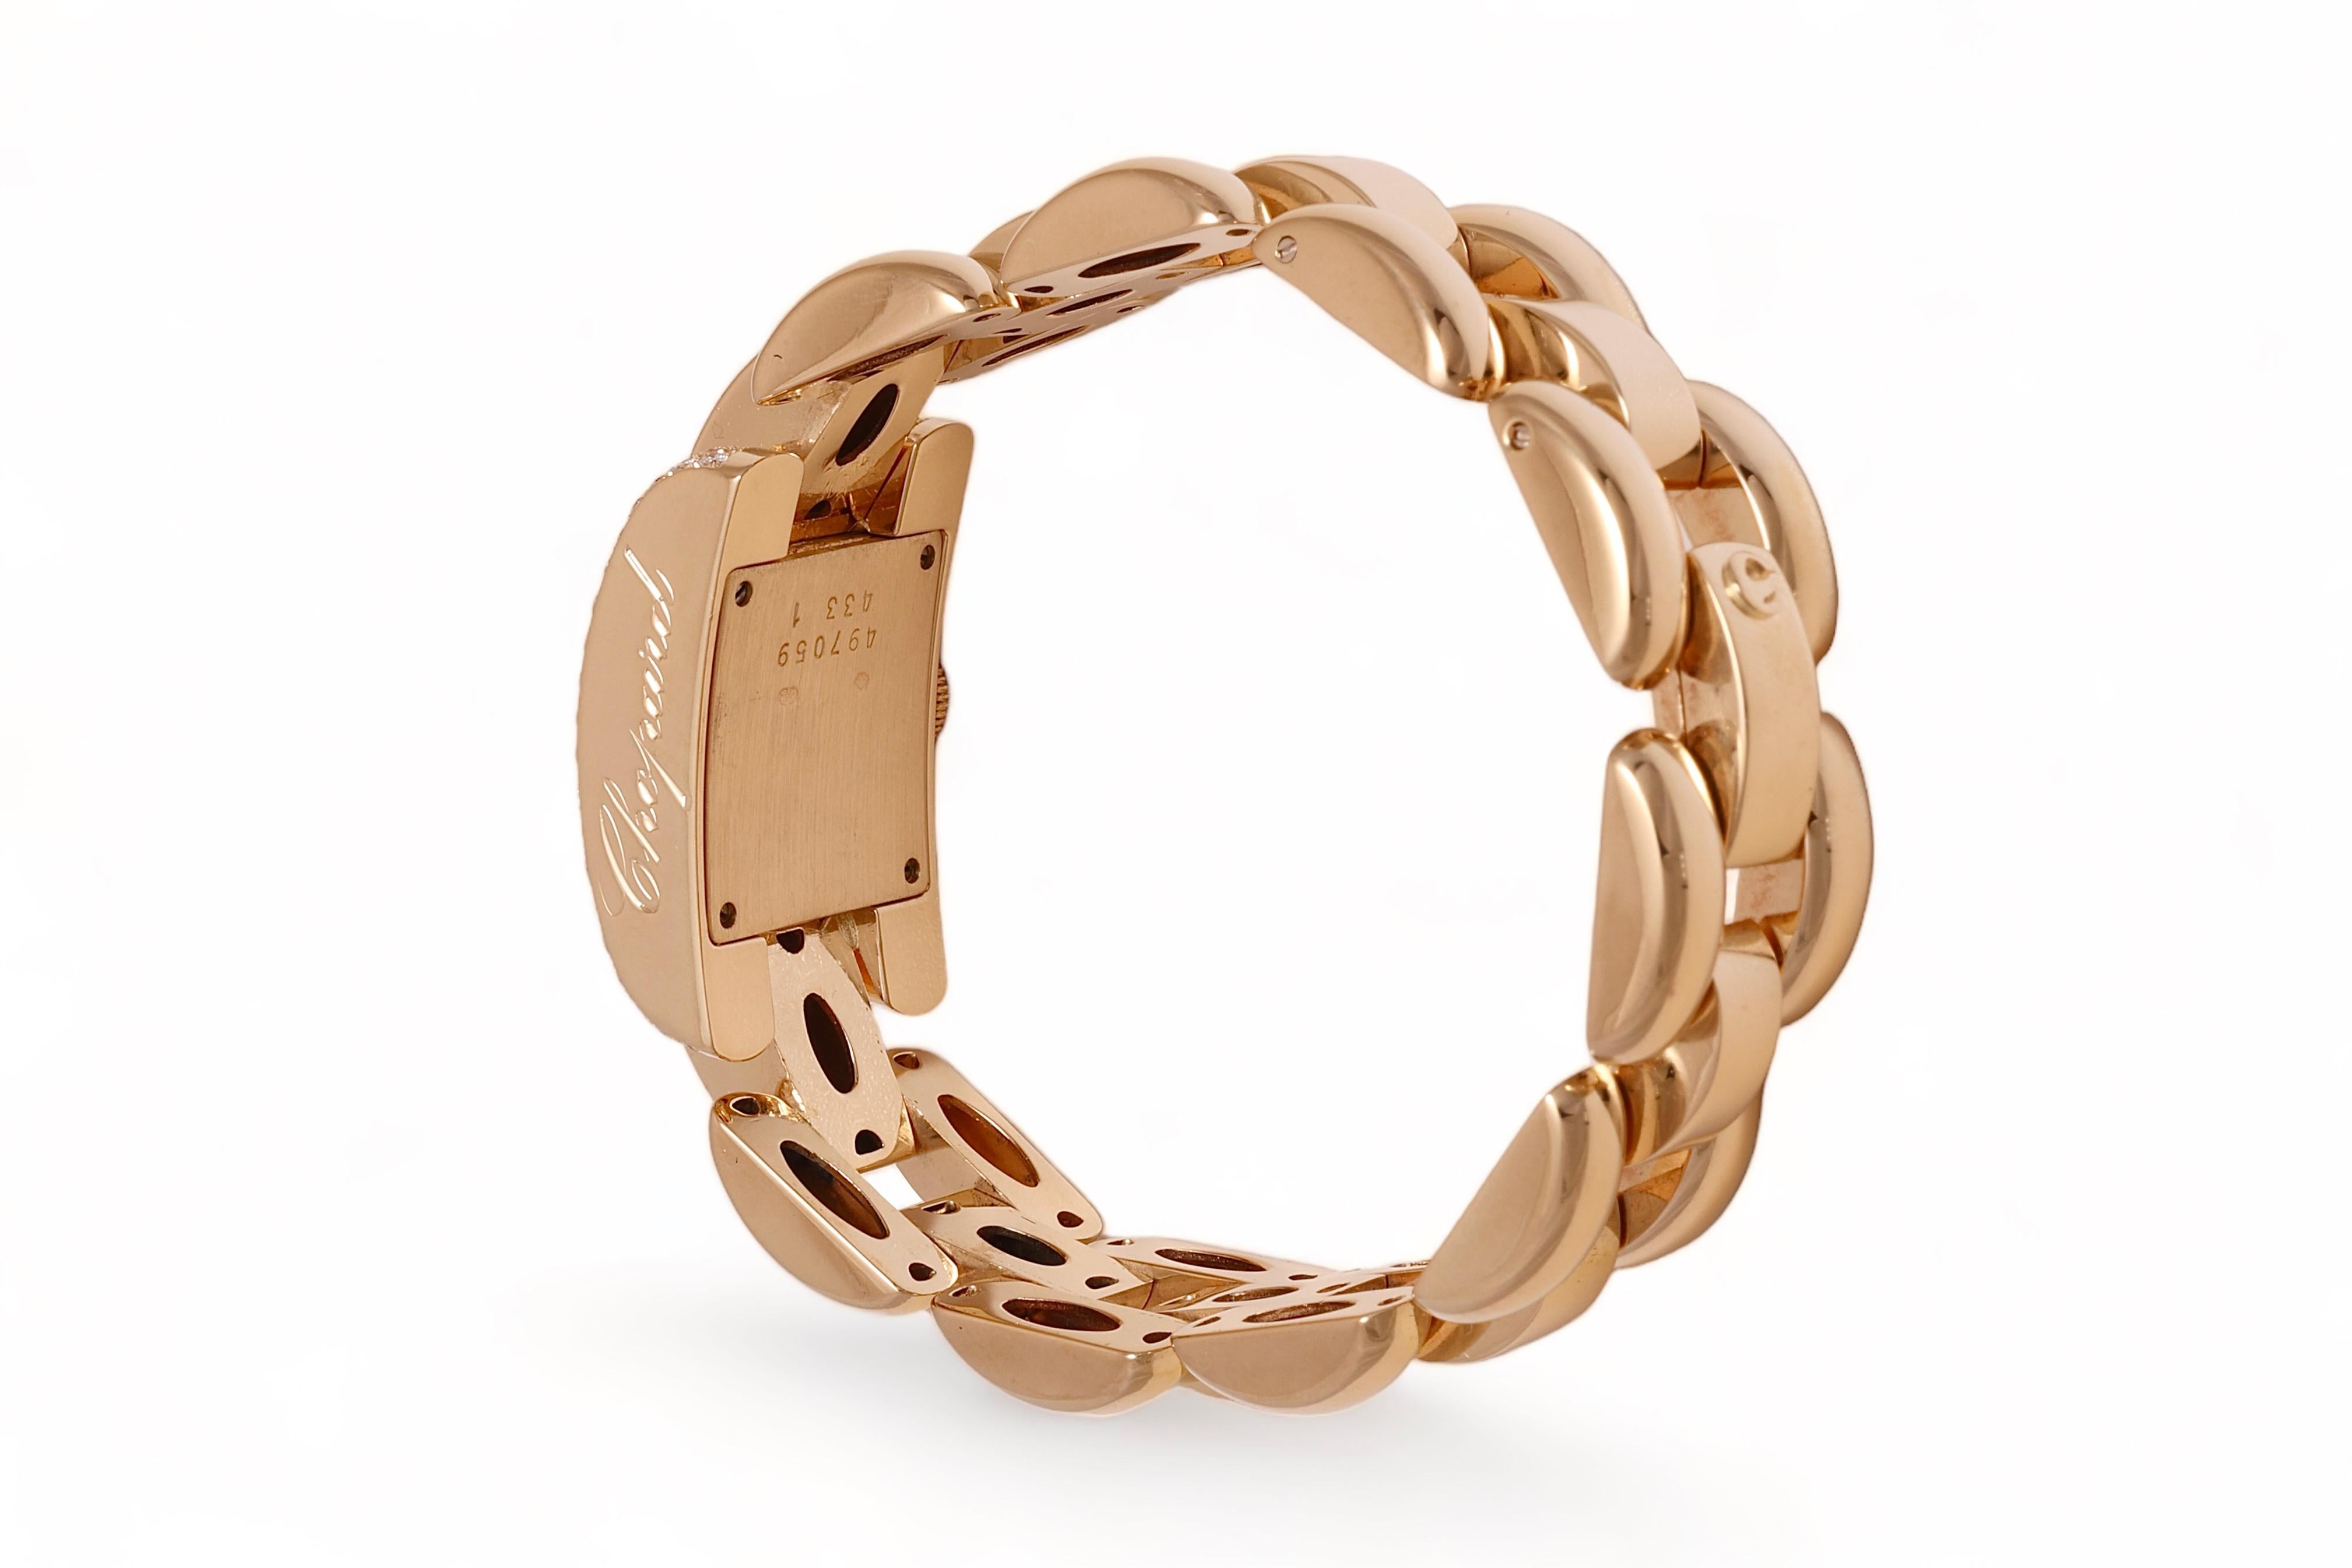 18 Kt. Gold & Diamonds Chopard La Strada Wrist Watch For Sale 1